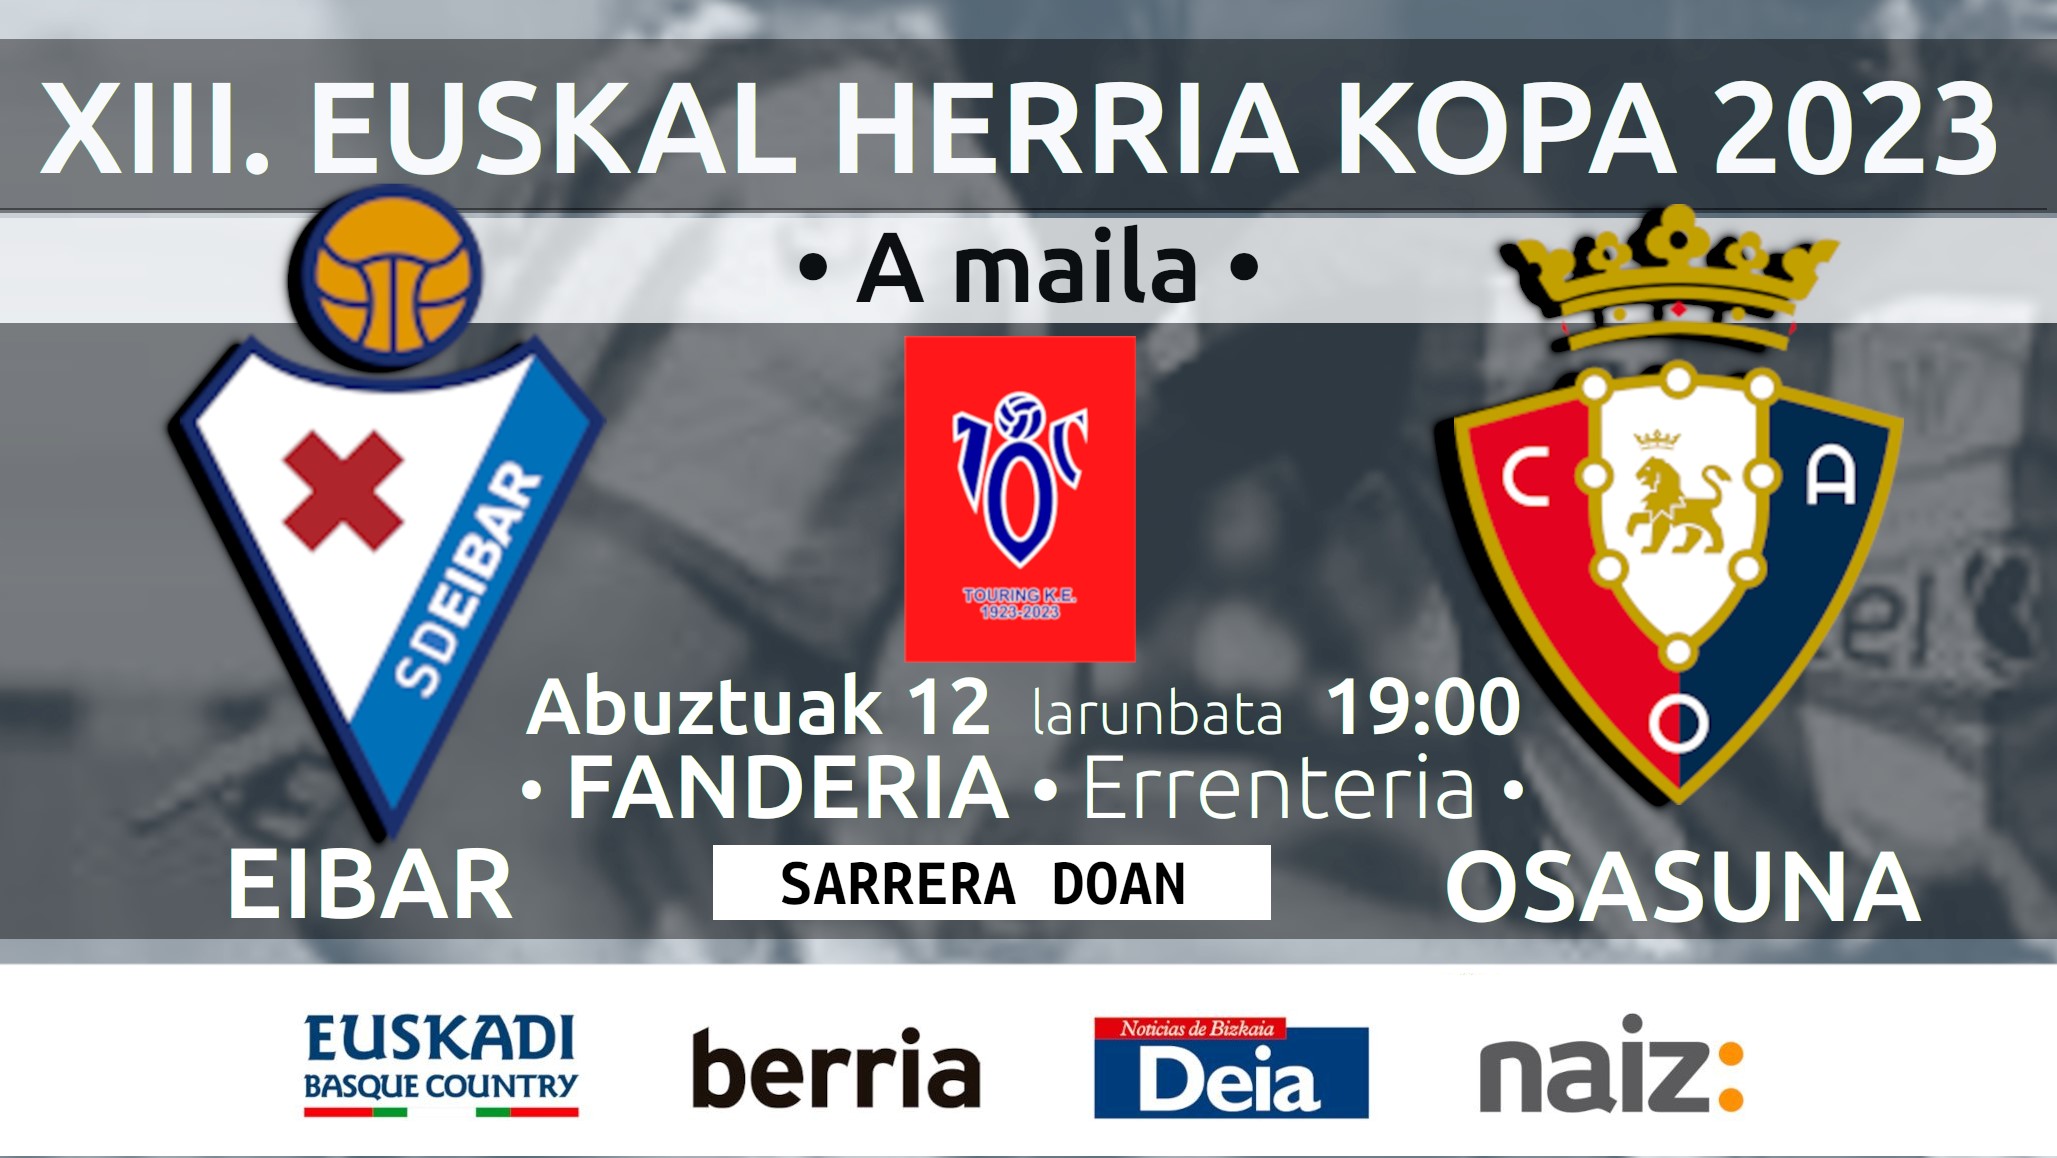 El partido inaugural del torneo de fútbol XIII. Euskal Herria Kopa se jugará este sábado en Errenteria